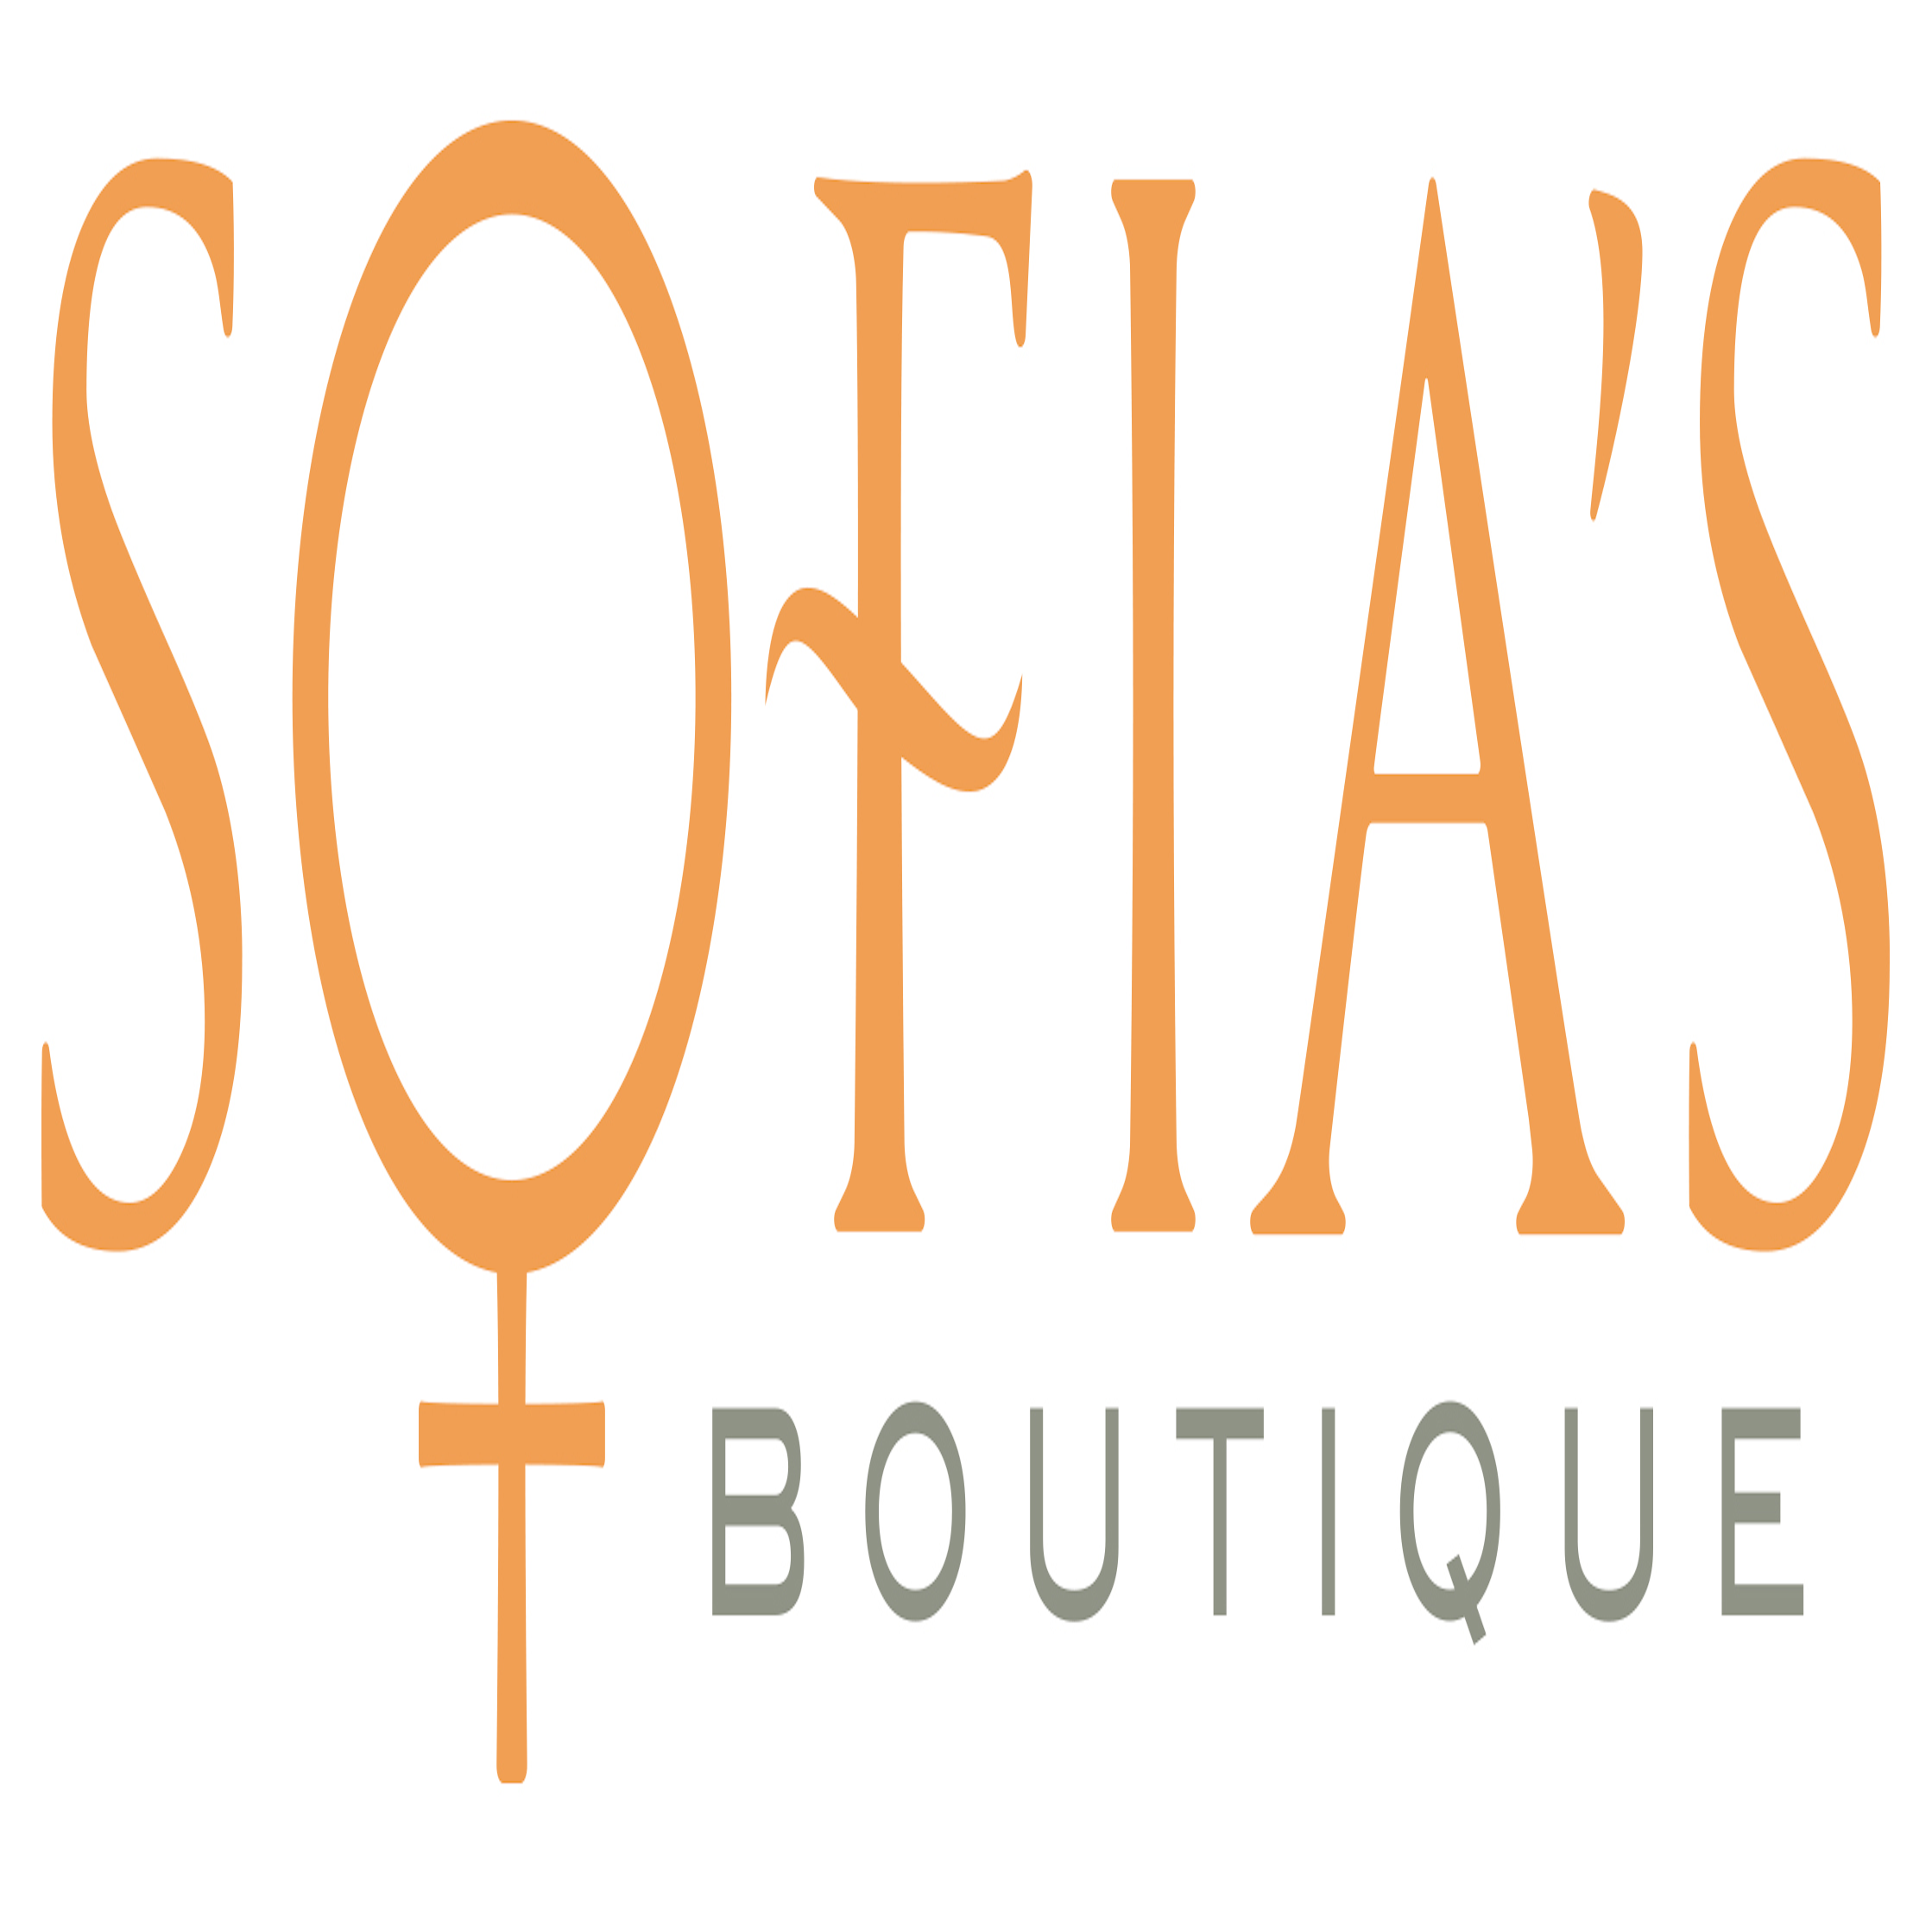 Text: Sofia's Boutique